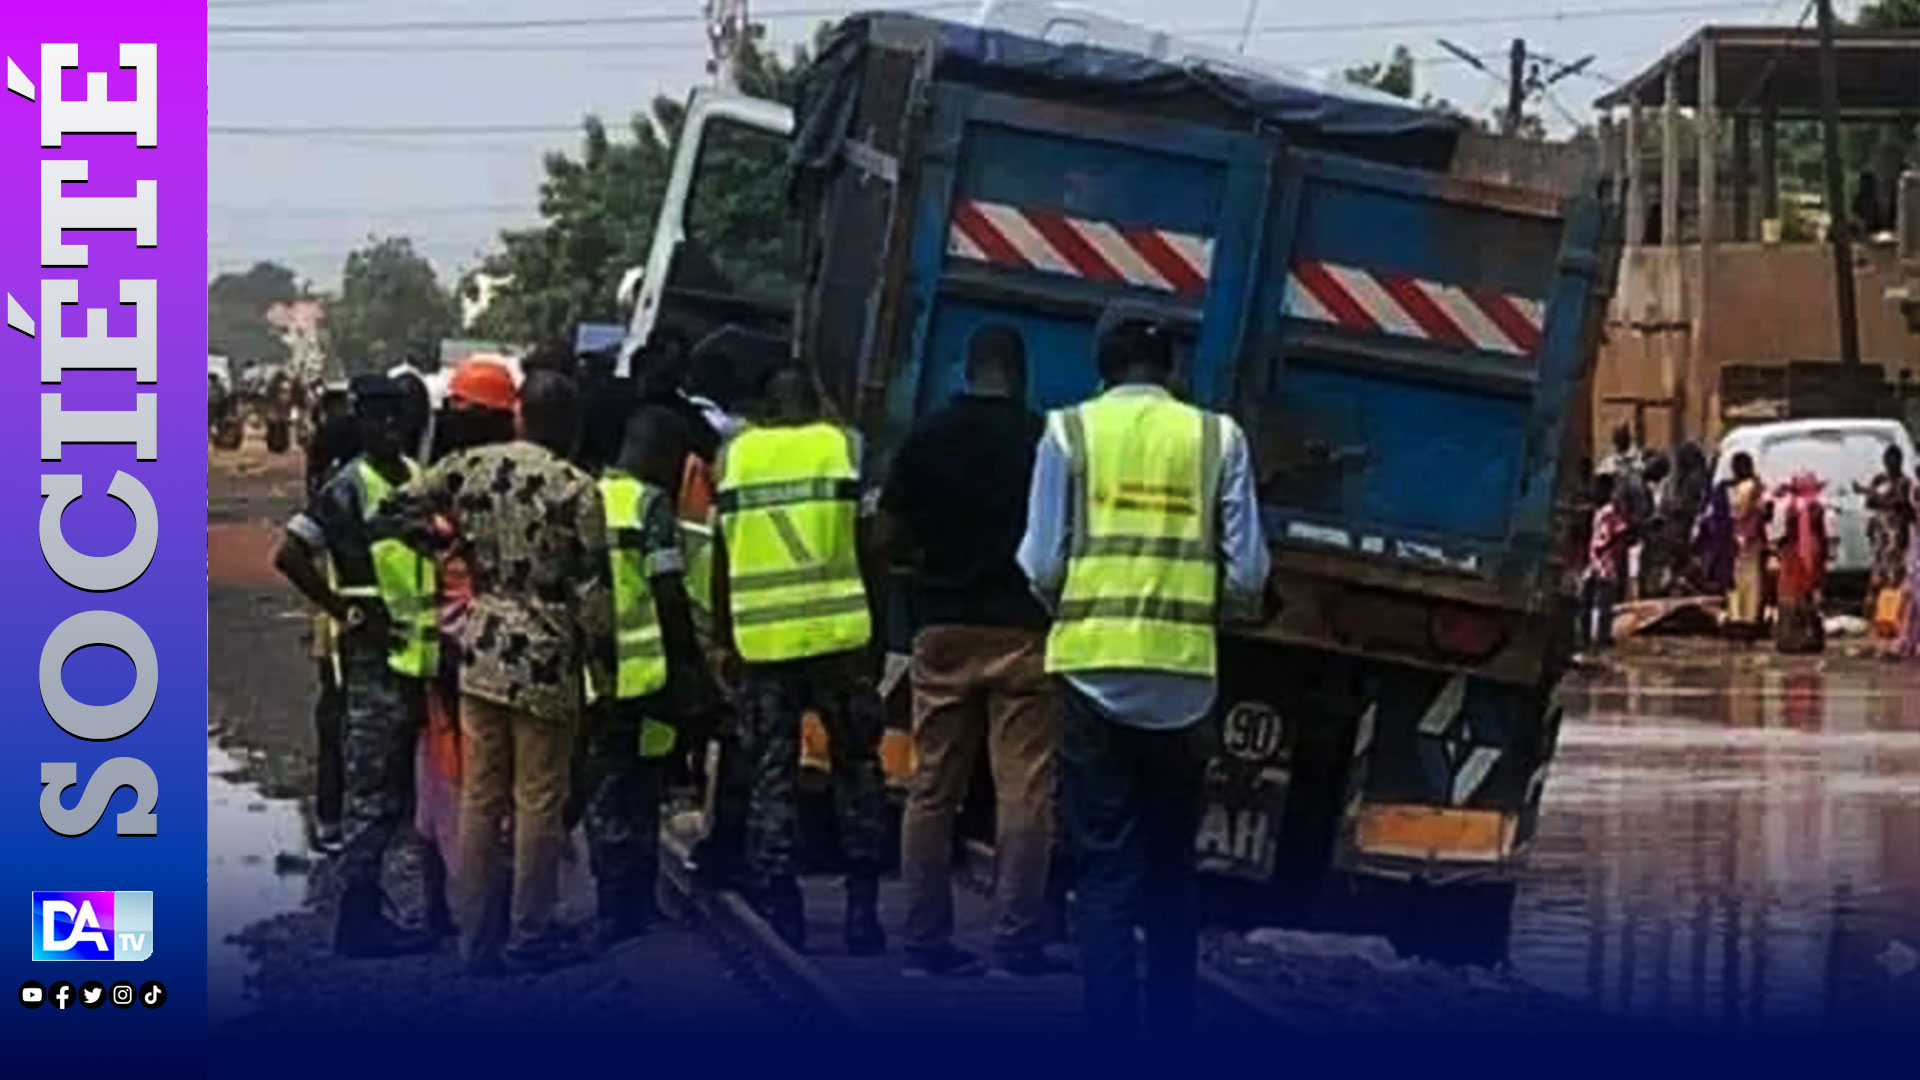 Acte d'incivisme Darou Marnane (Touba) : Un camion tombe en panne sur les rails...Un accident sans précédent évité de justesse